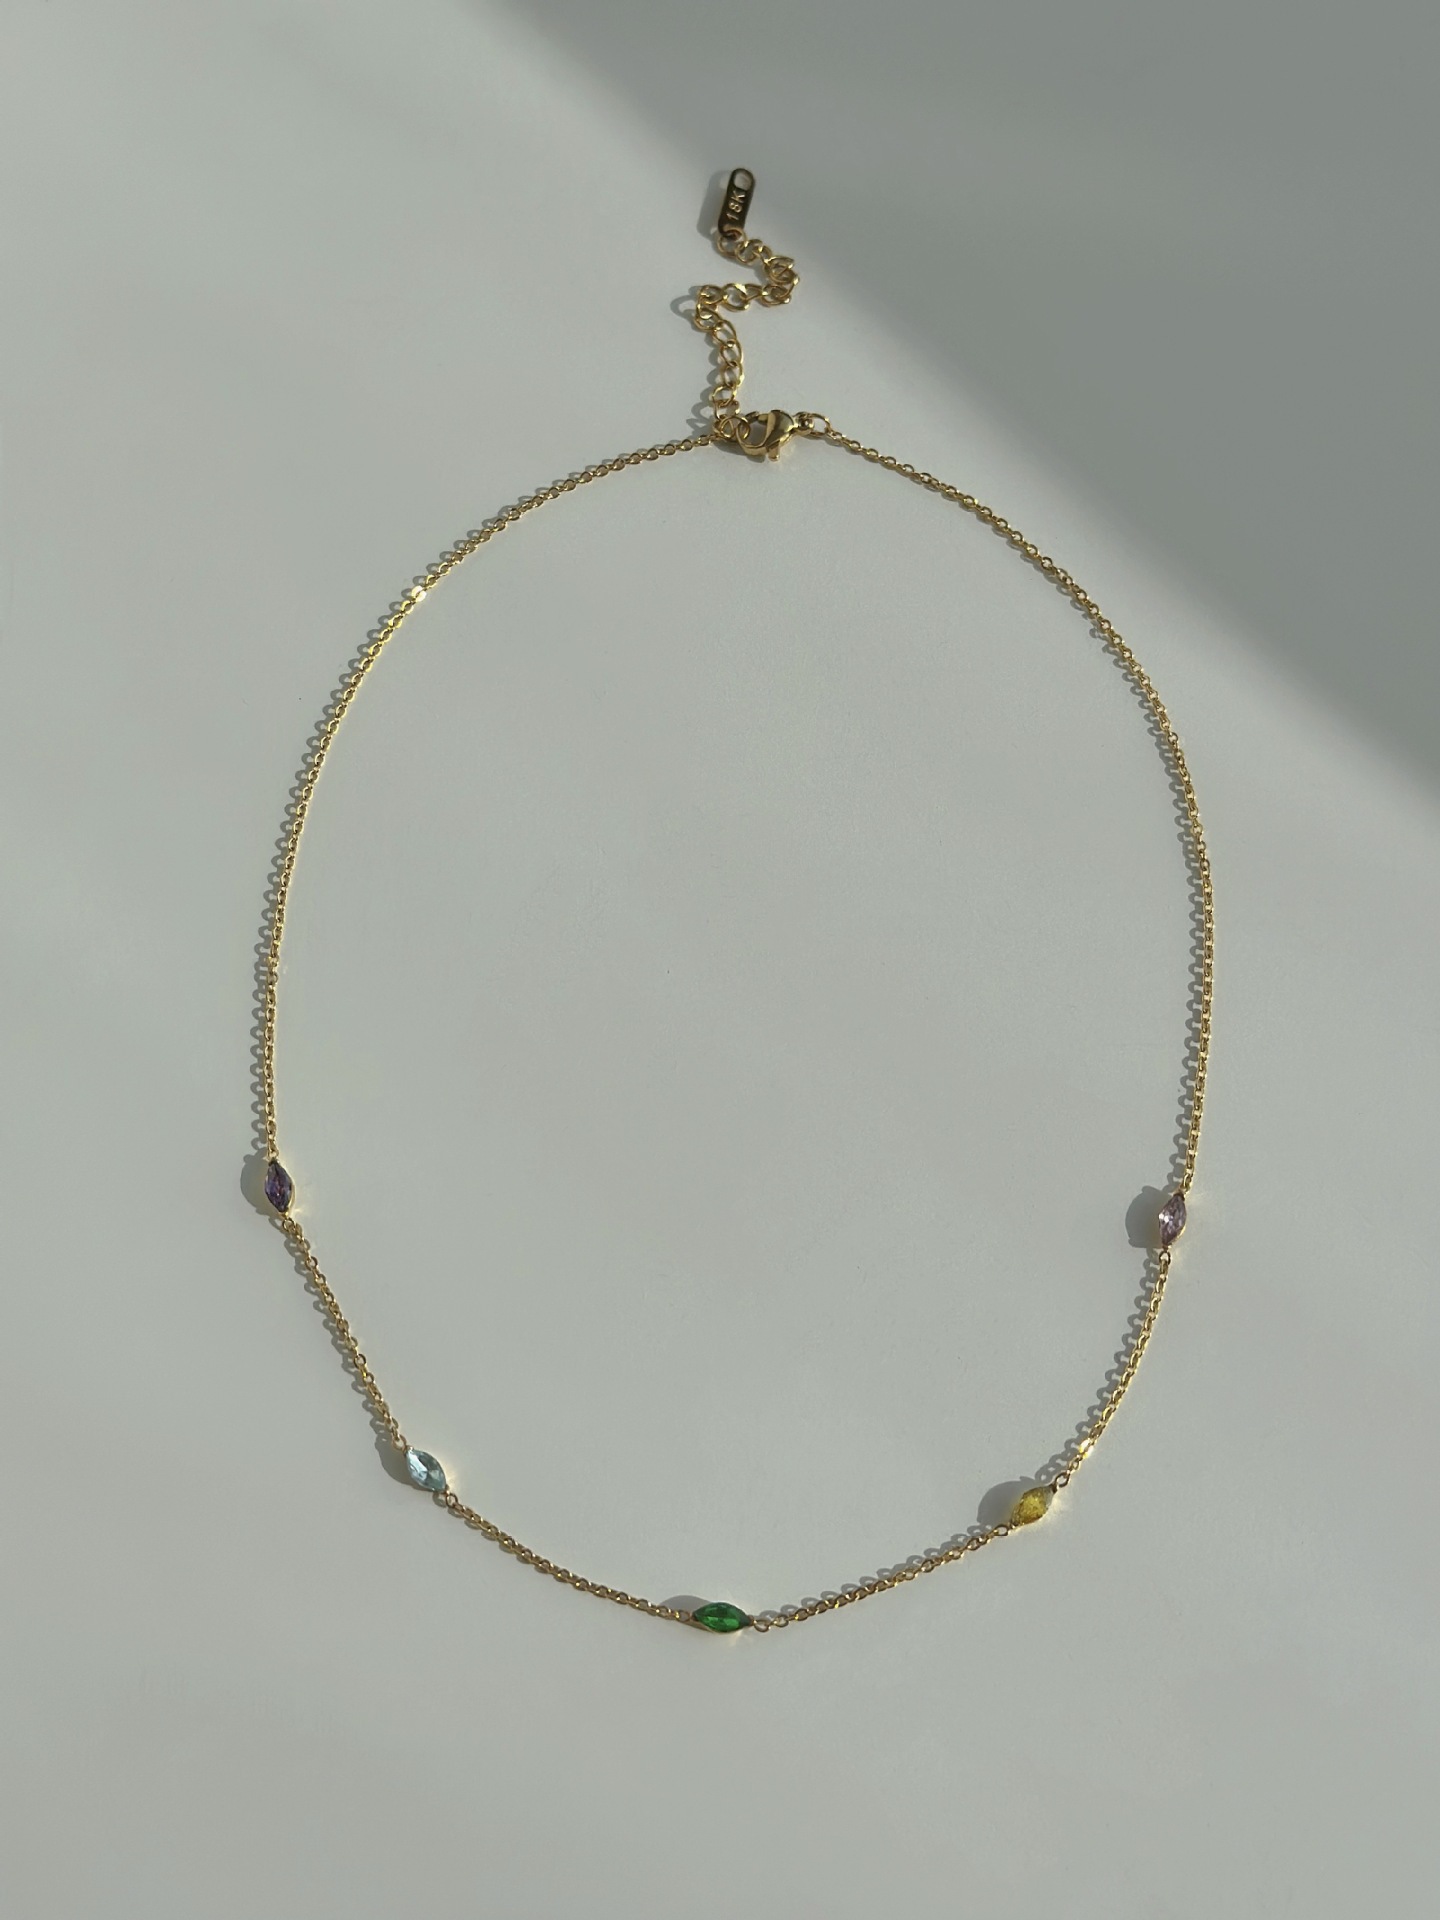 41x5cm necklace color zirconium